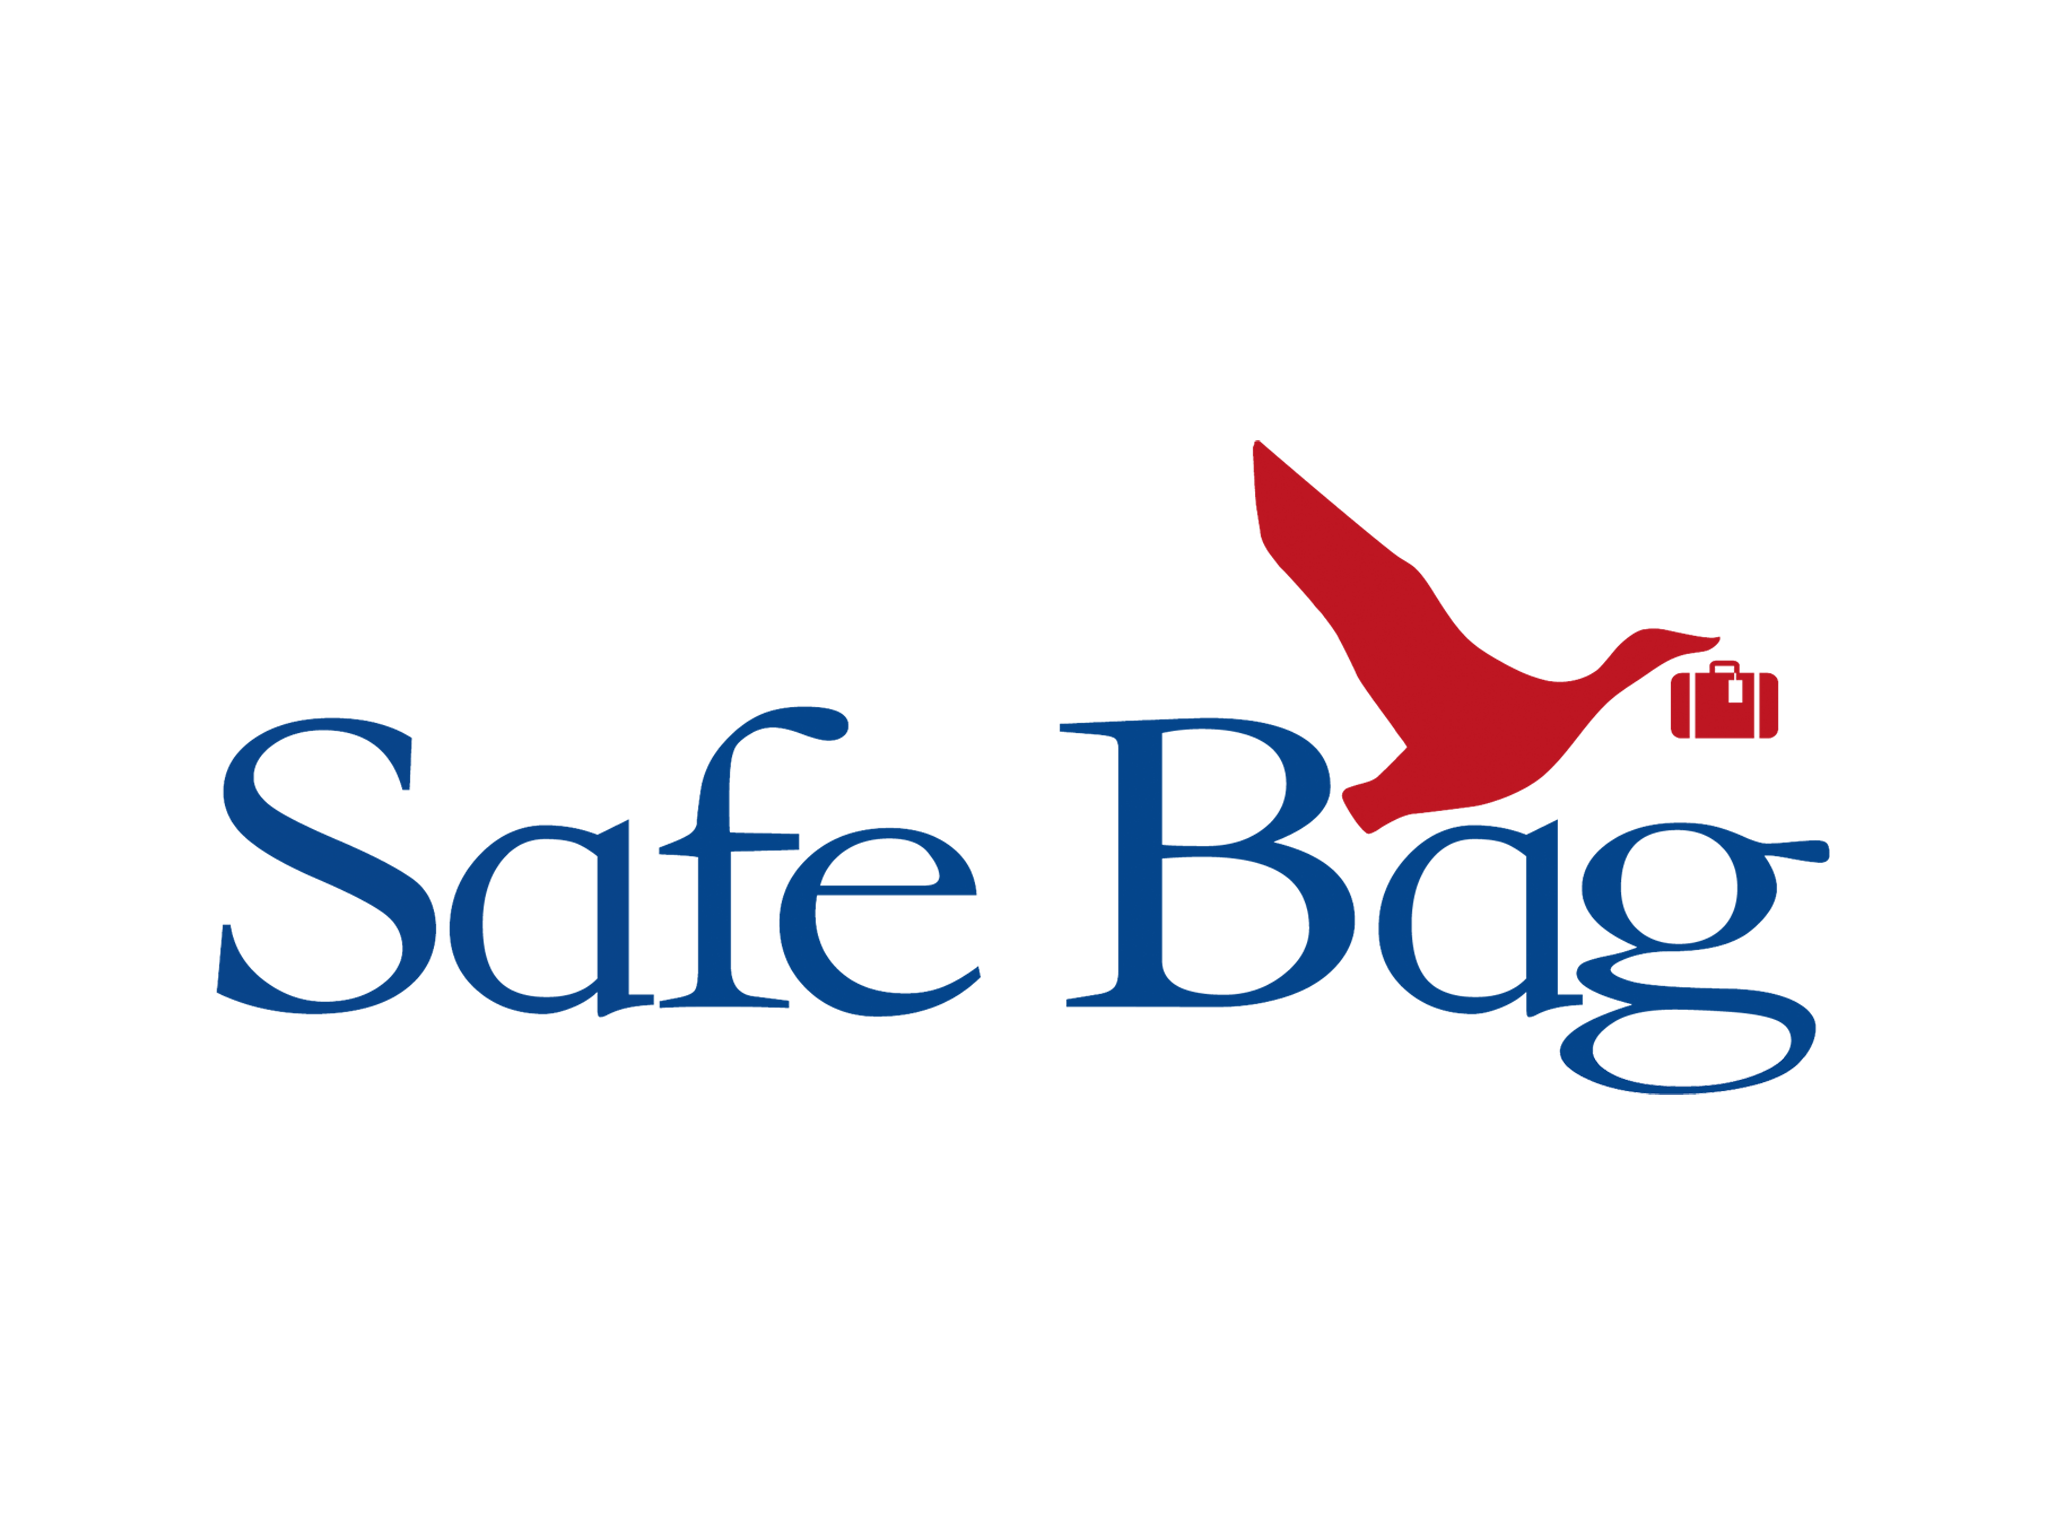 Safe Bag